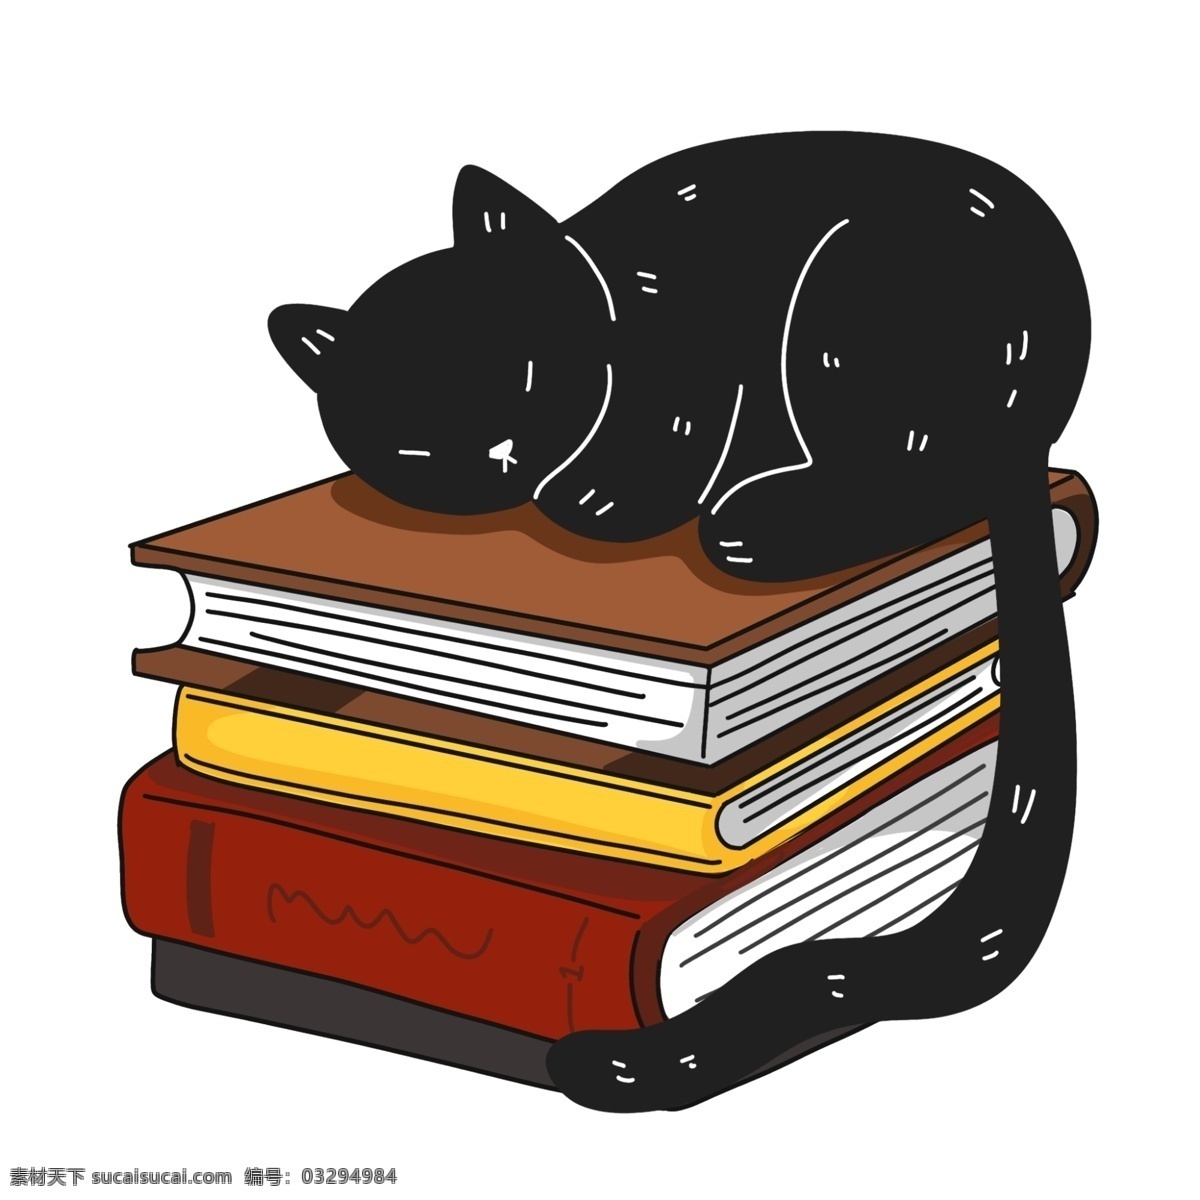 创意 堆叠 书籍 插画 堆叠的书籍 卡通书籍插画 黑色的猫咪 睡觉的猫咪 书本 创意书籍插画 动物